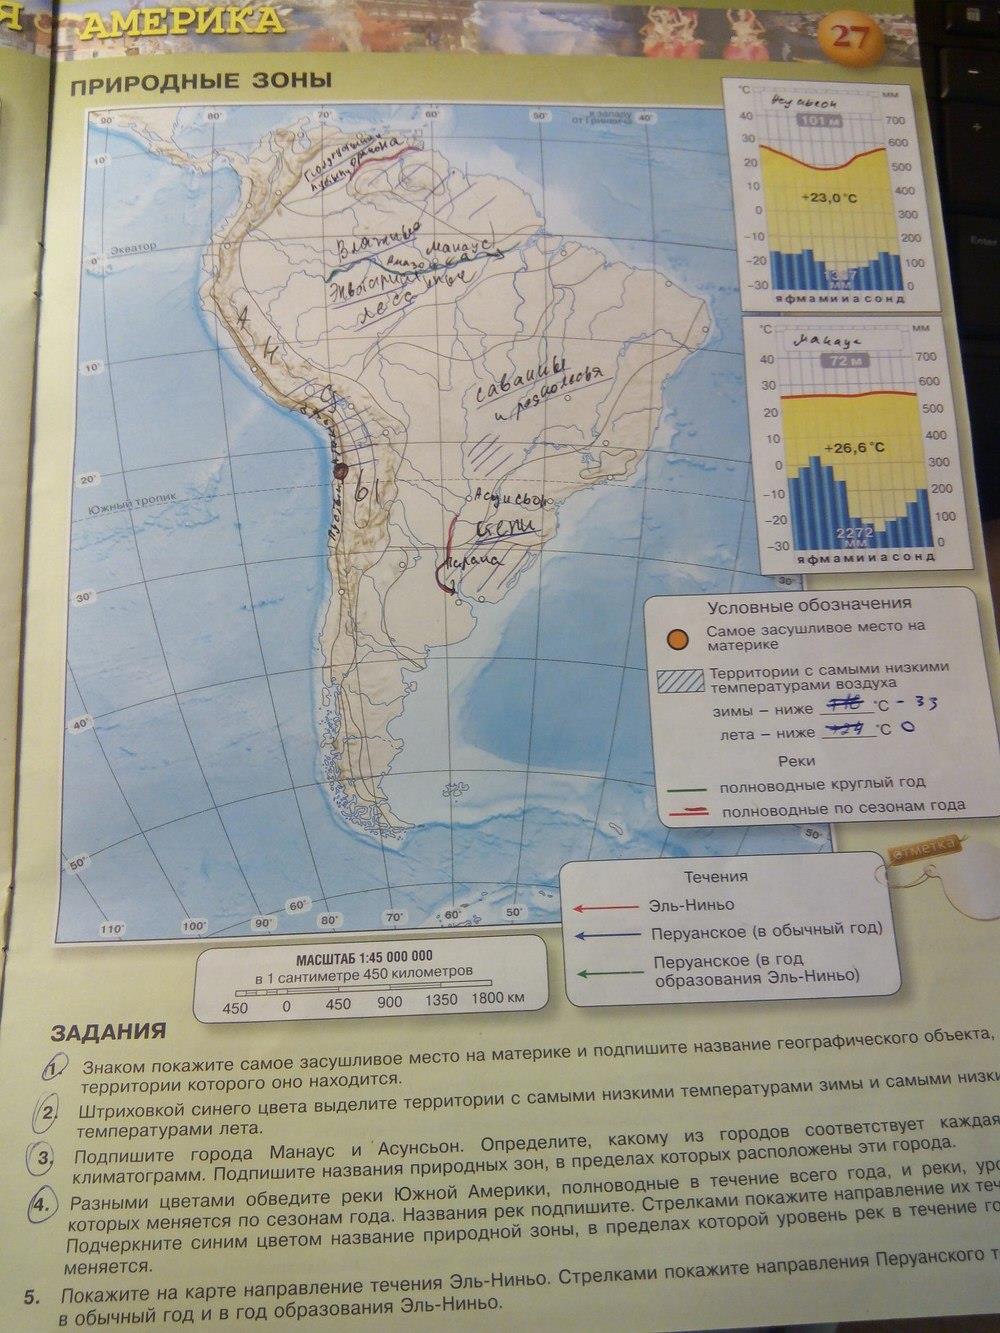 География страница 77 номер 7. География 7 класс контурные карты стр 27. Карта Южной Америки 7 класс география. Гдз по географии 7 класс карта. Карта по географии 7 класс Южная Америка.